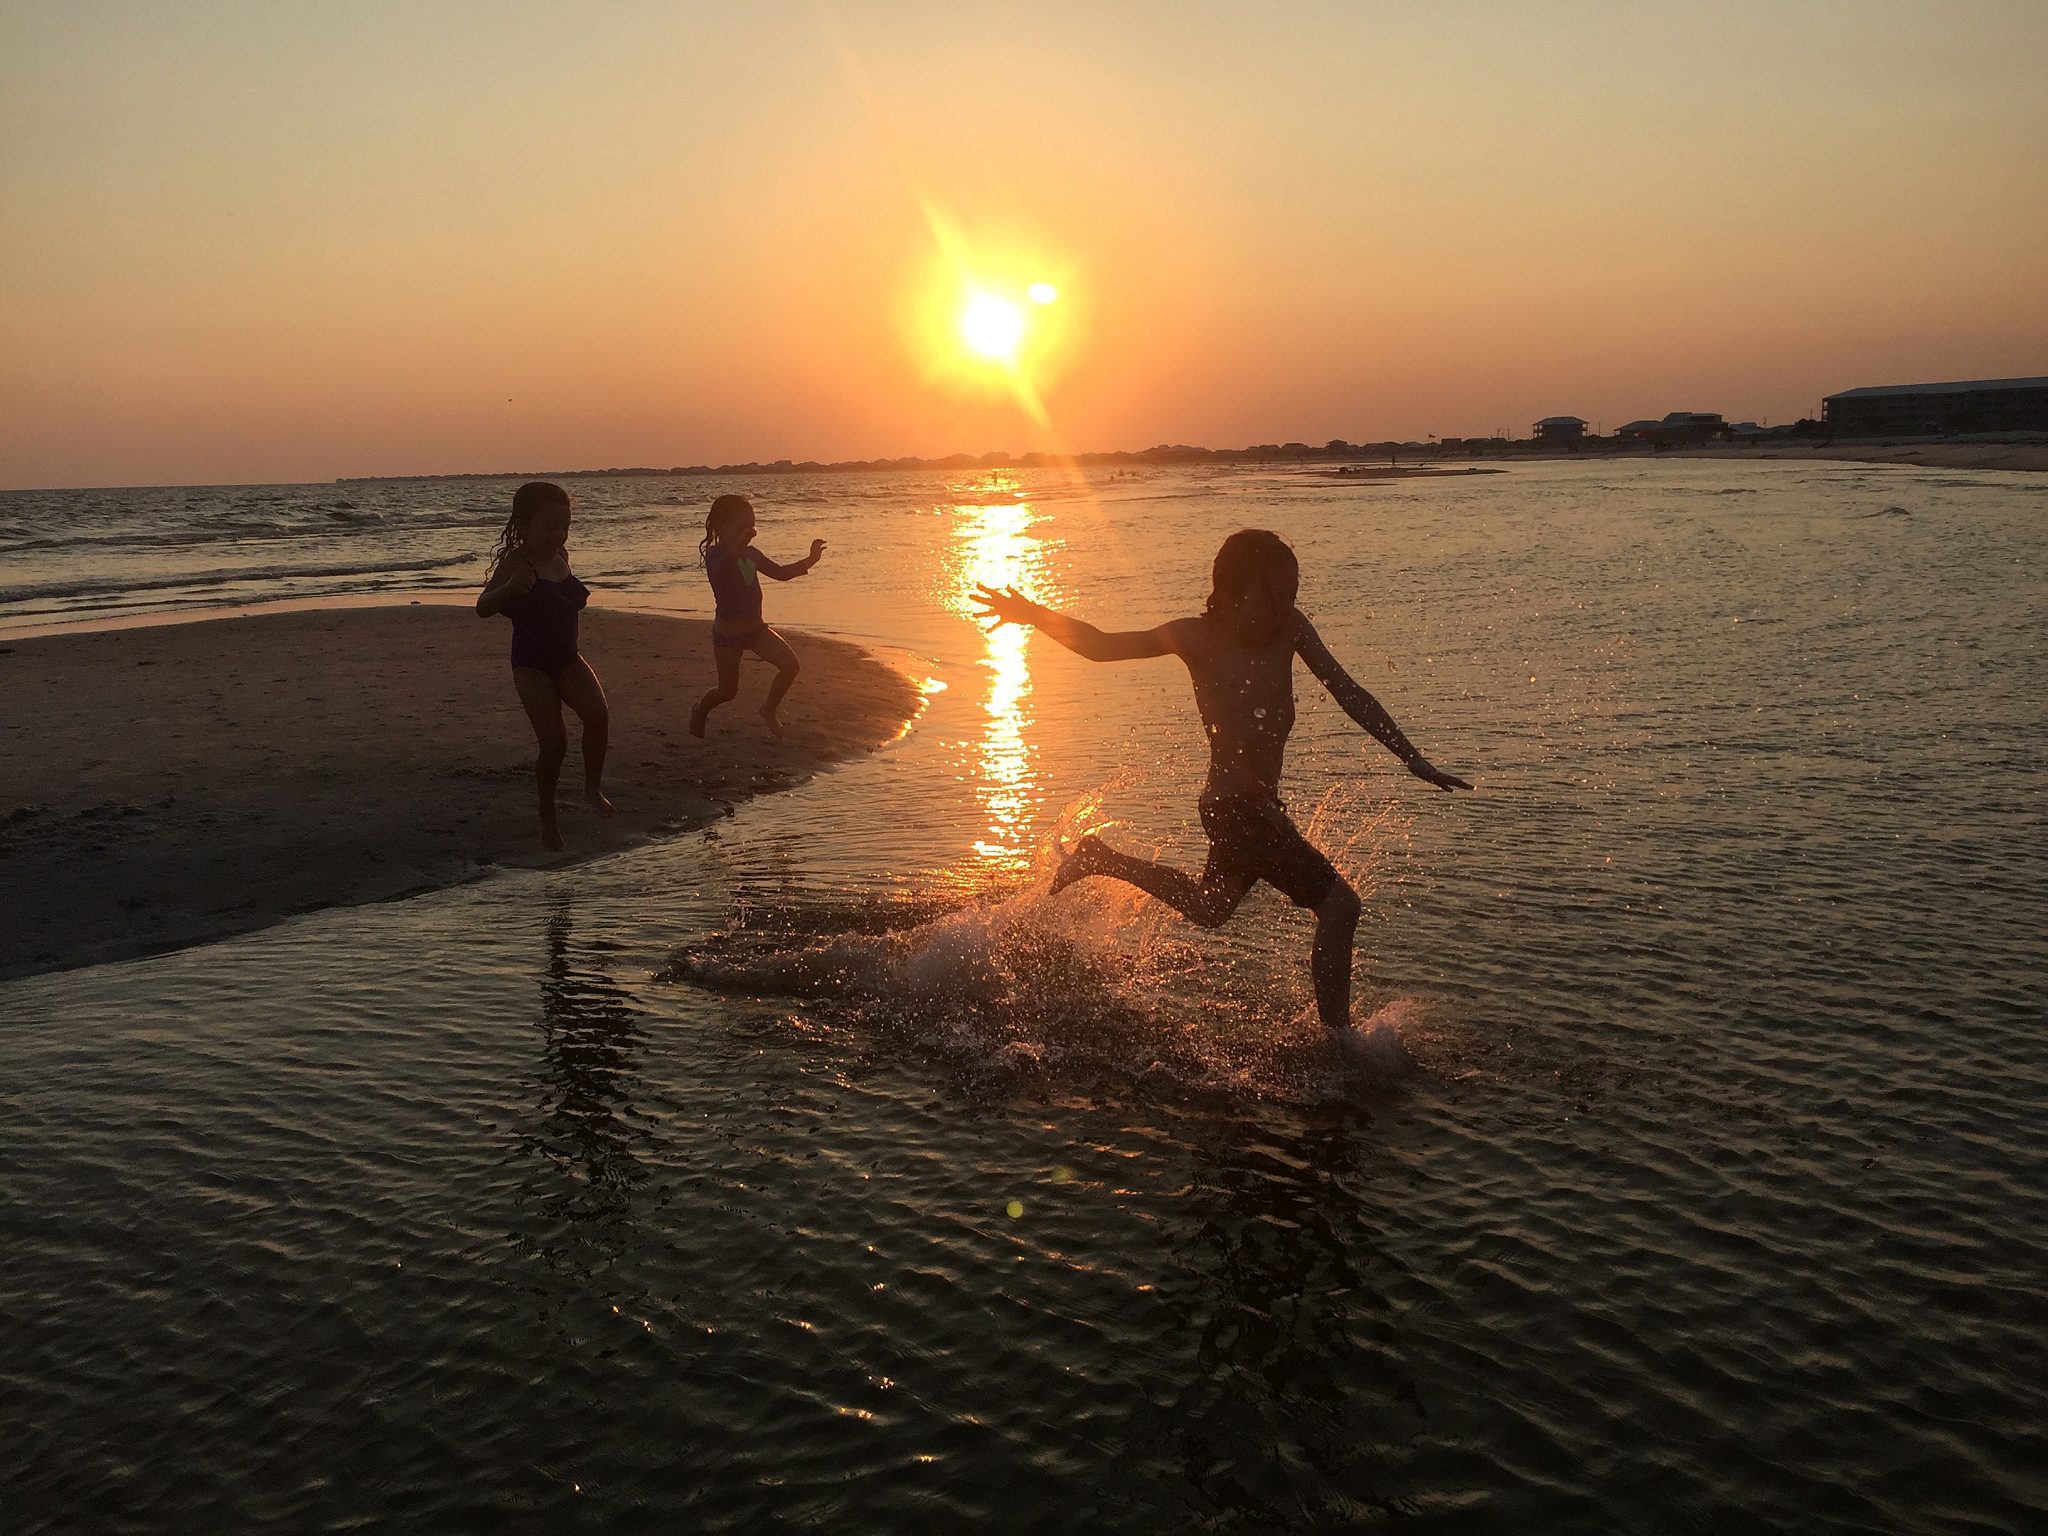 Three children run along a beach at sunset.